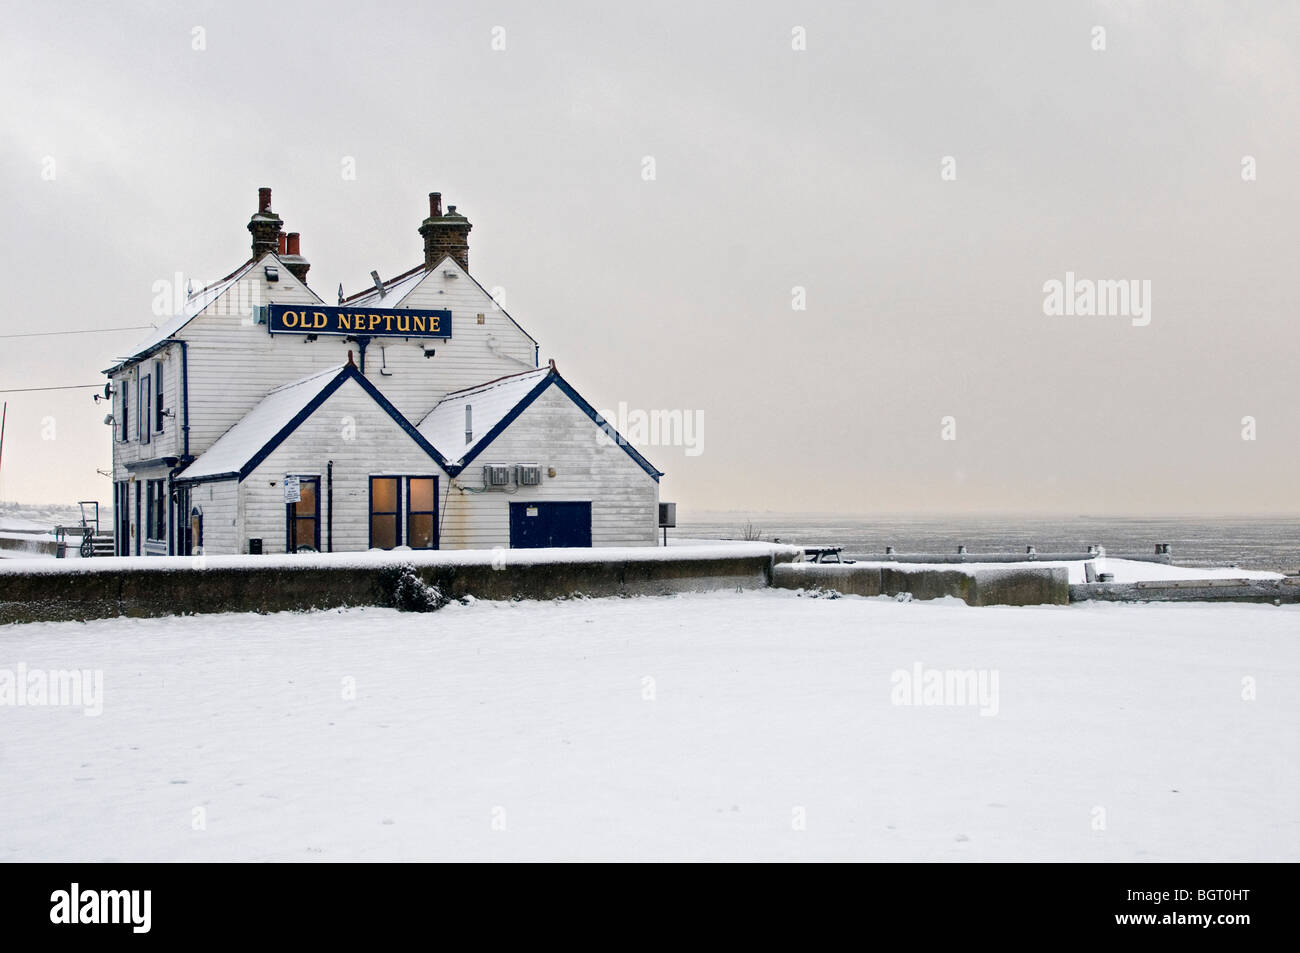 Neige sur beach whitstable kent england UK vieille pub Neptune Banque D'Images